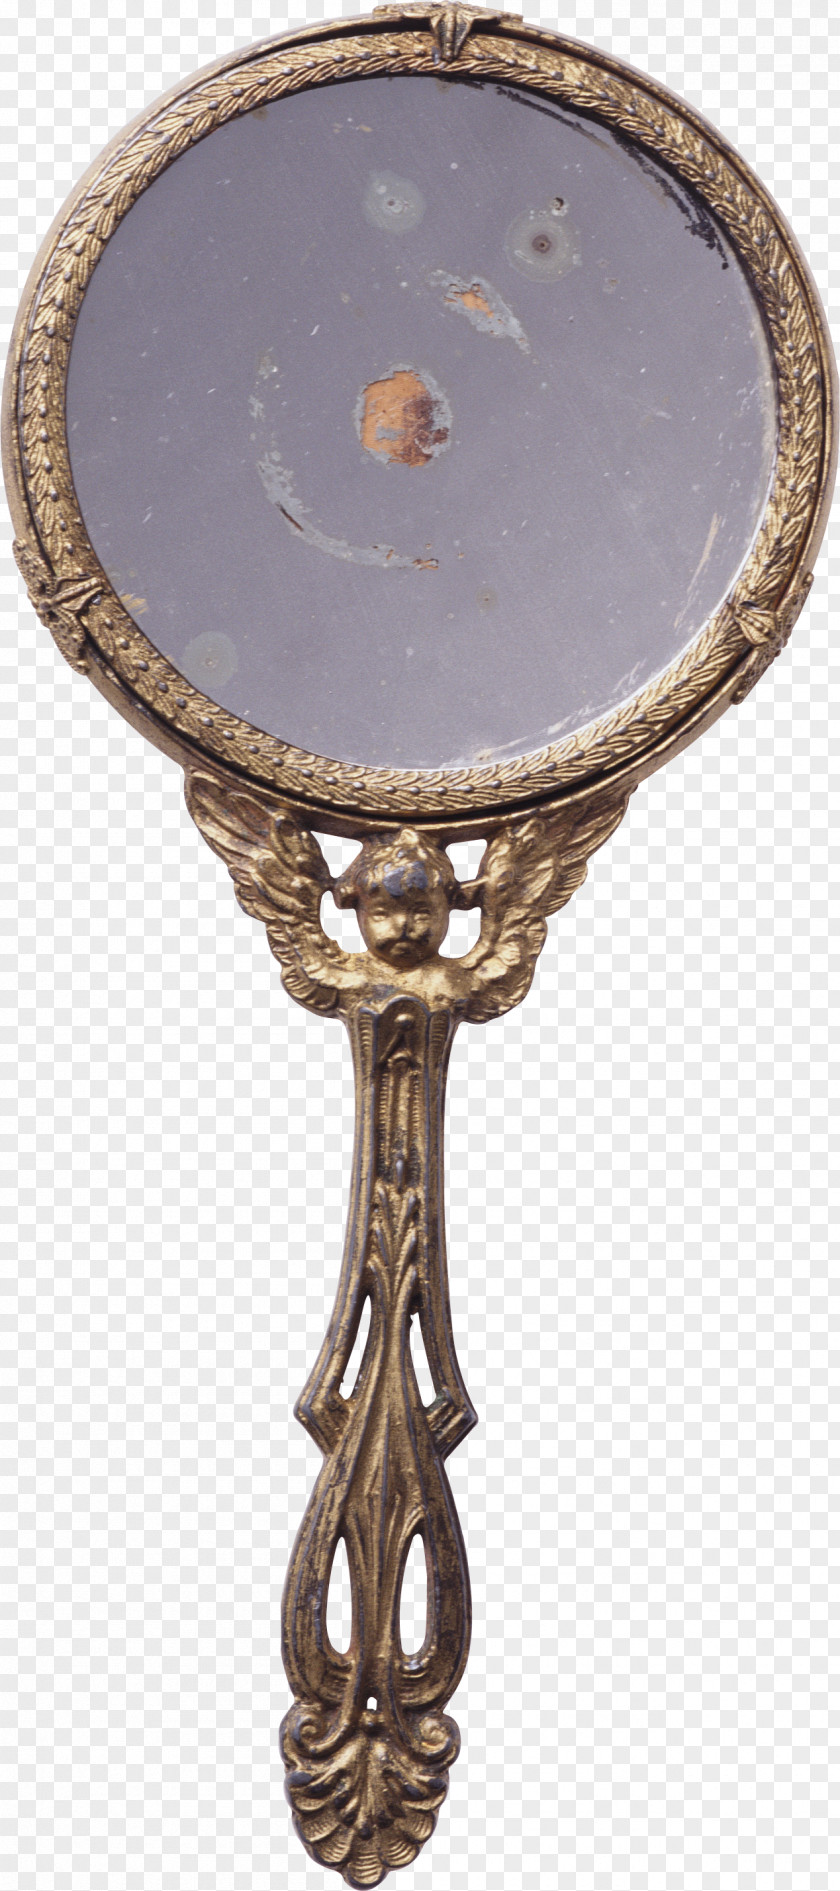 Mirror Image Espelho De Metal JPEG PNG